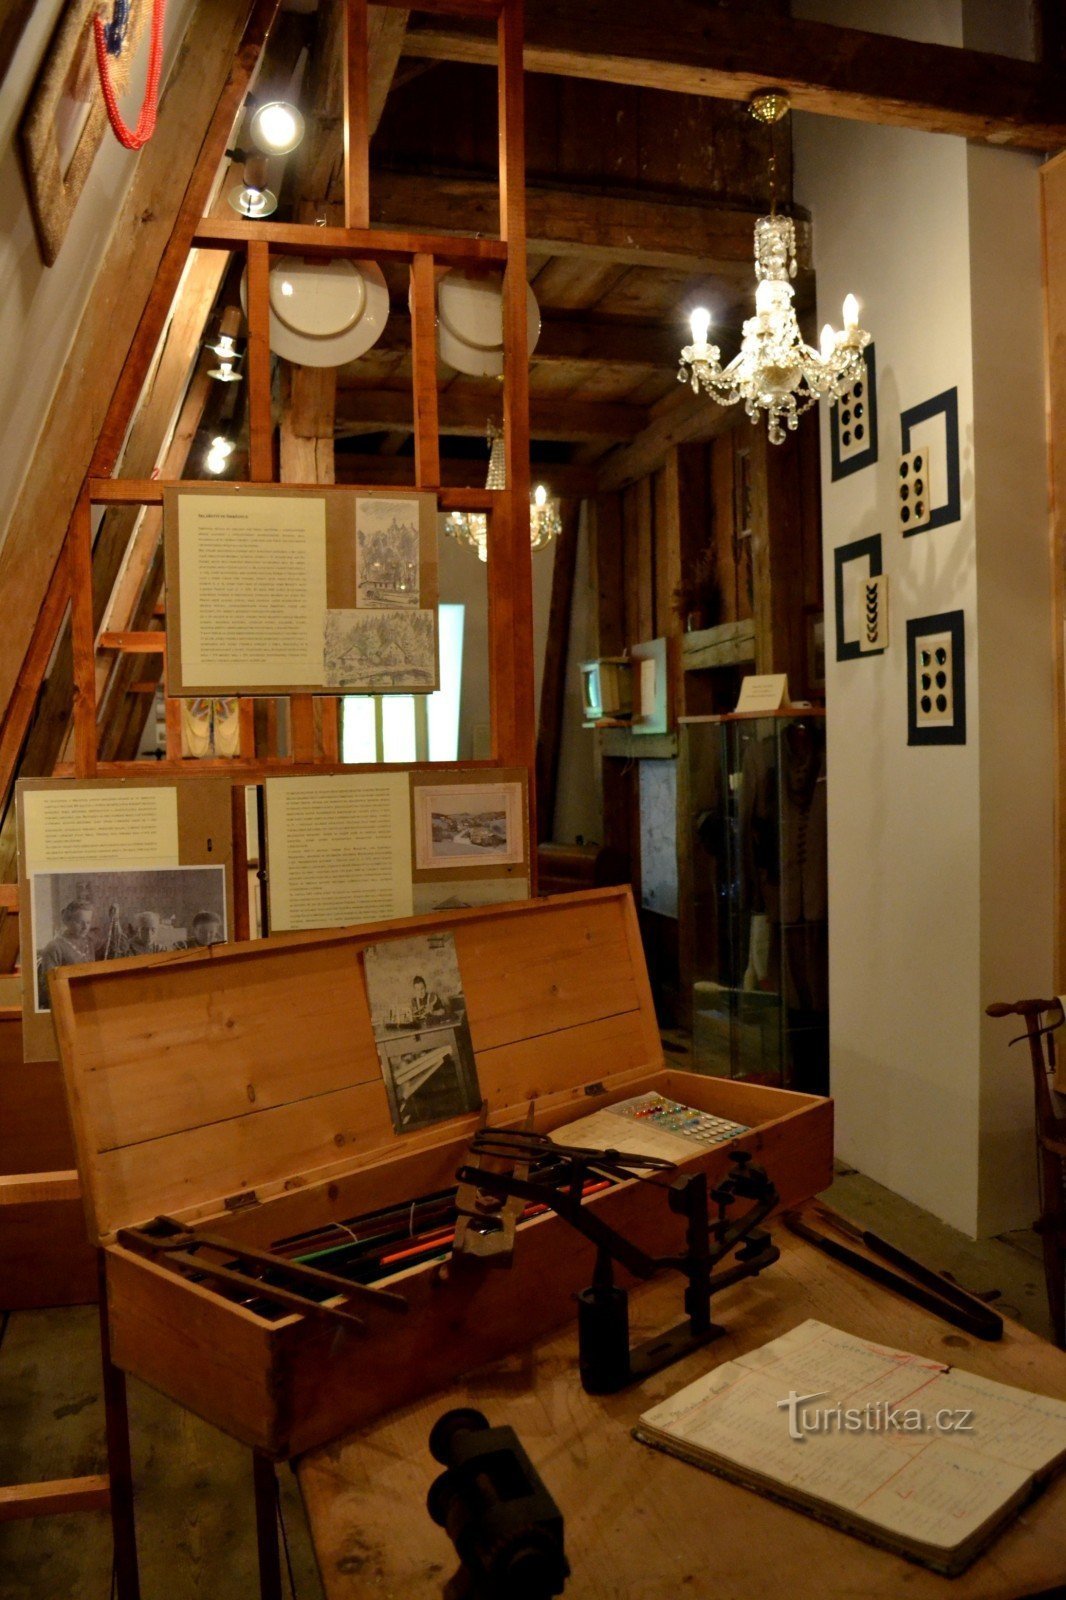 Museo de historia local y sala de exposiciones Smržovka